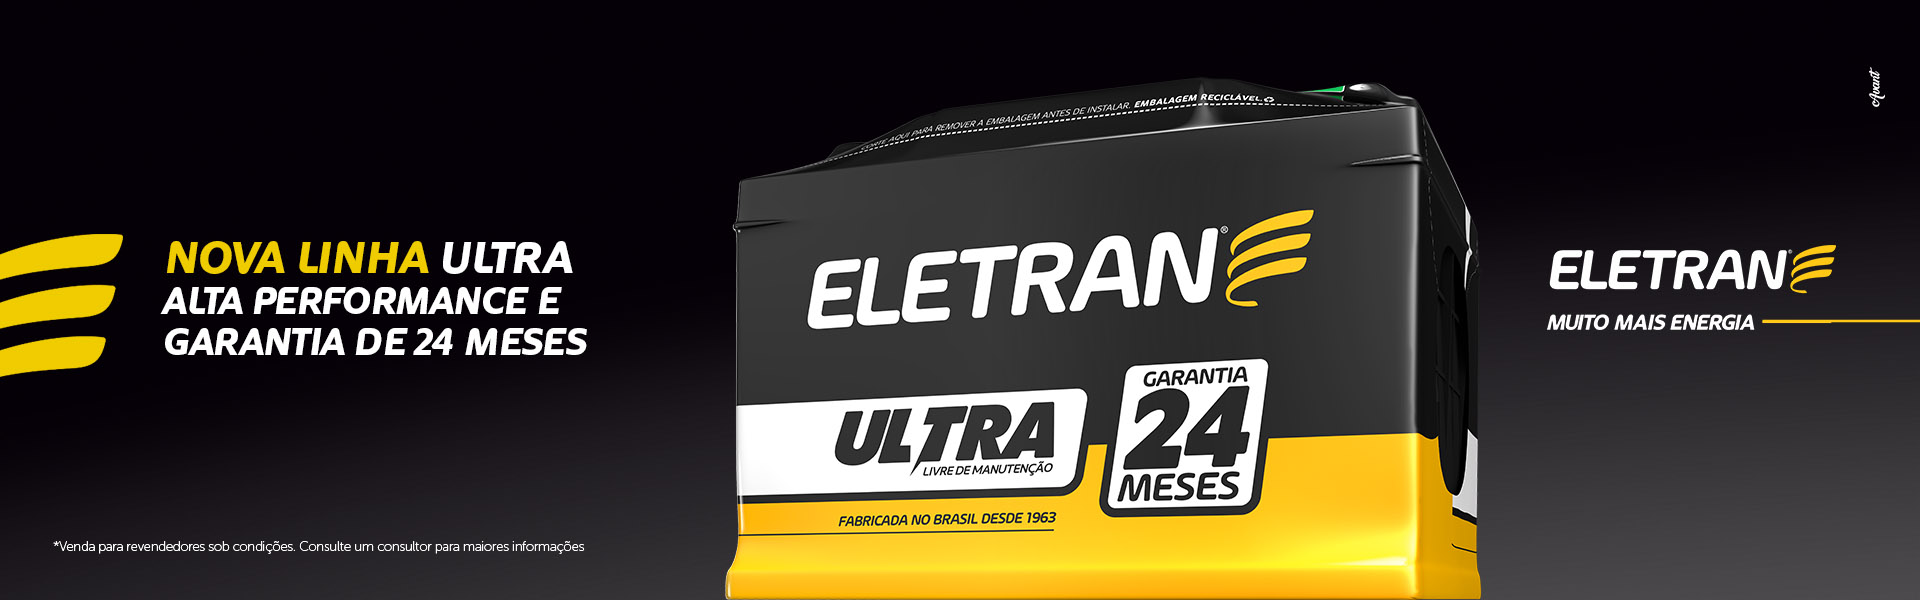 Lojas Eletran | Baterias Eletran - Desde 1963